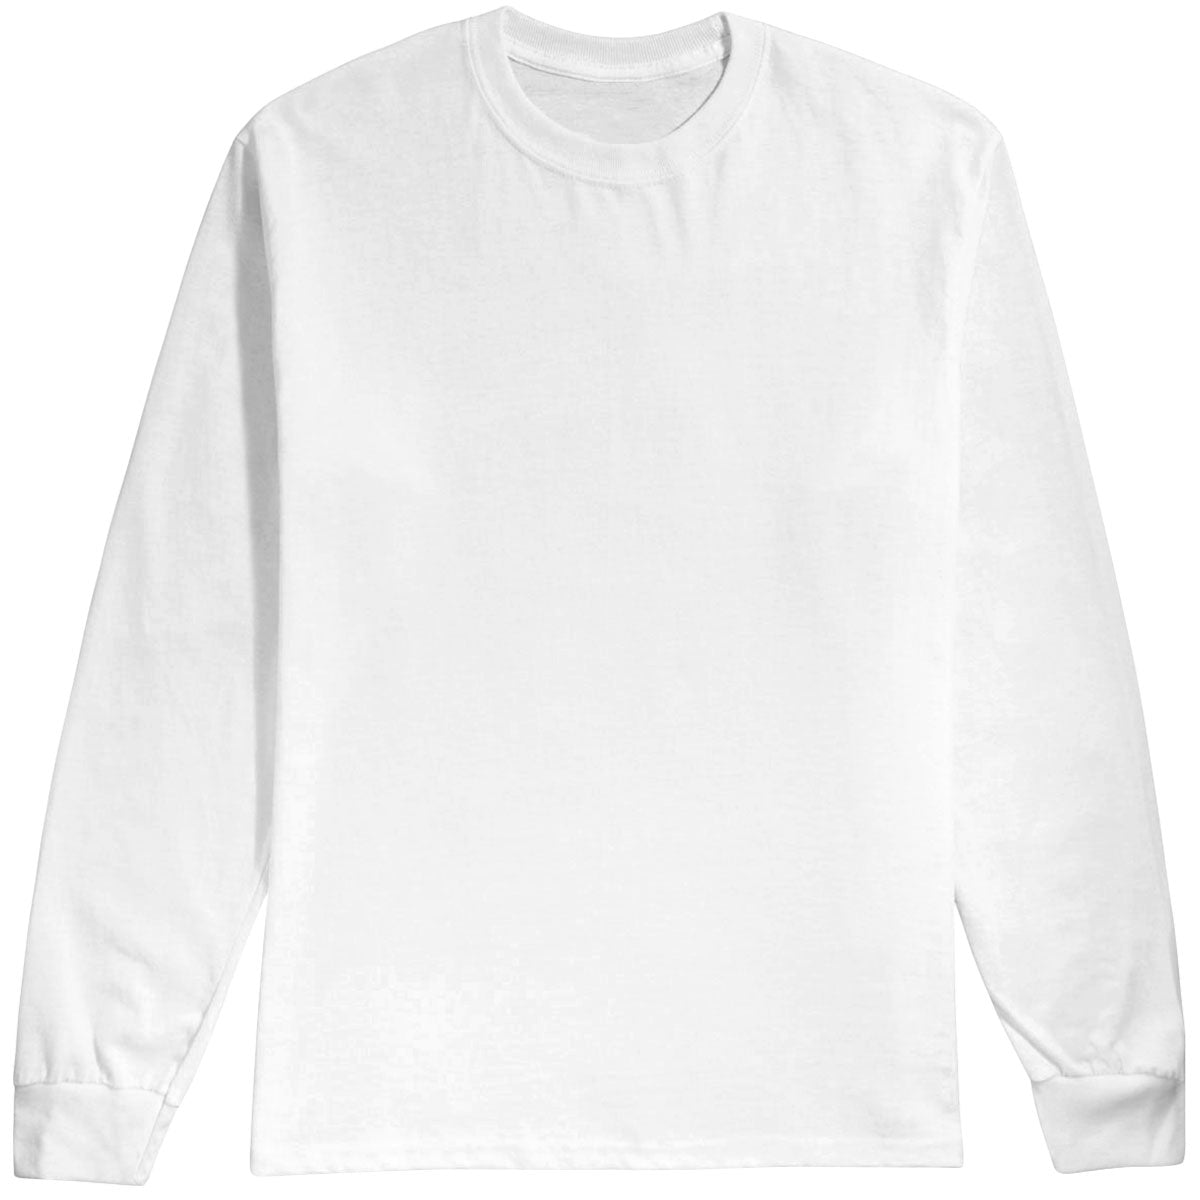 Habitat Crest Long Sleeve T-Shirt - White - XL image 1